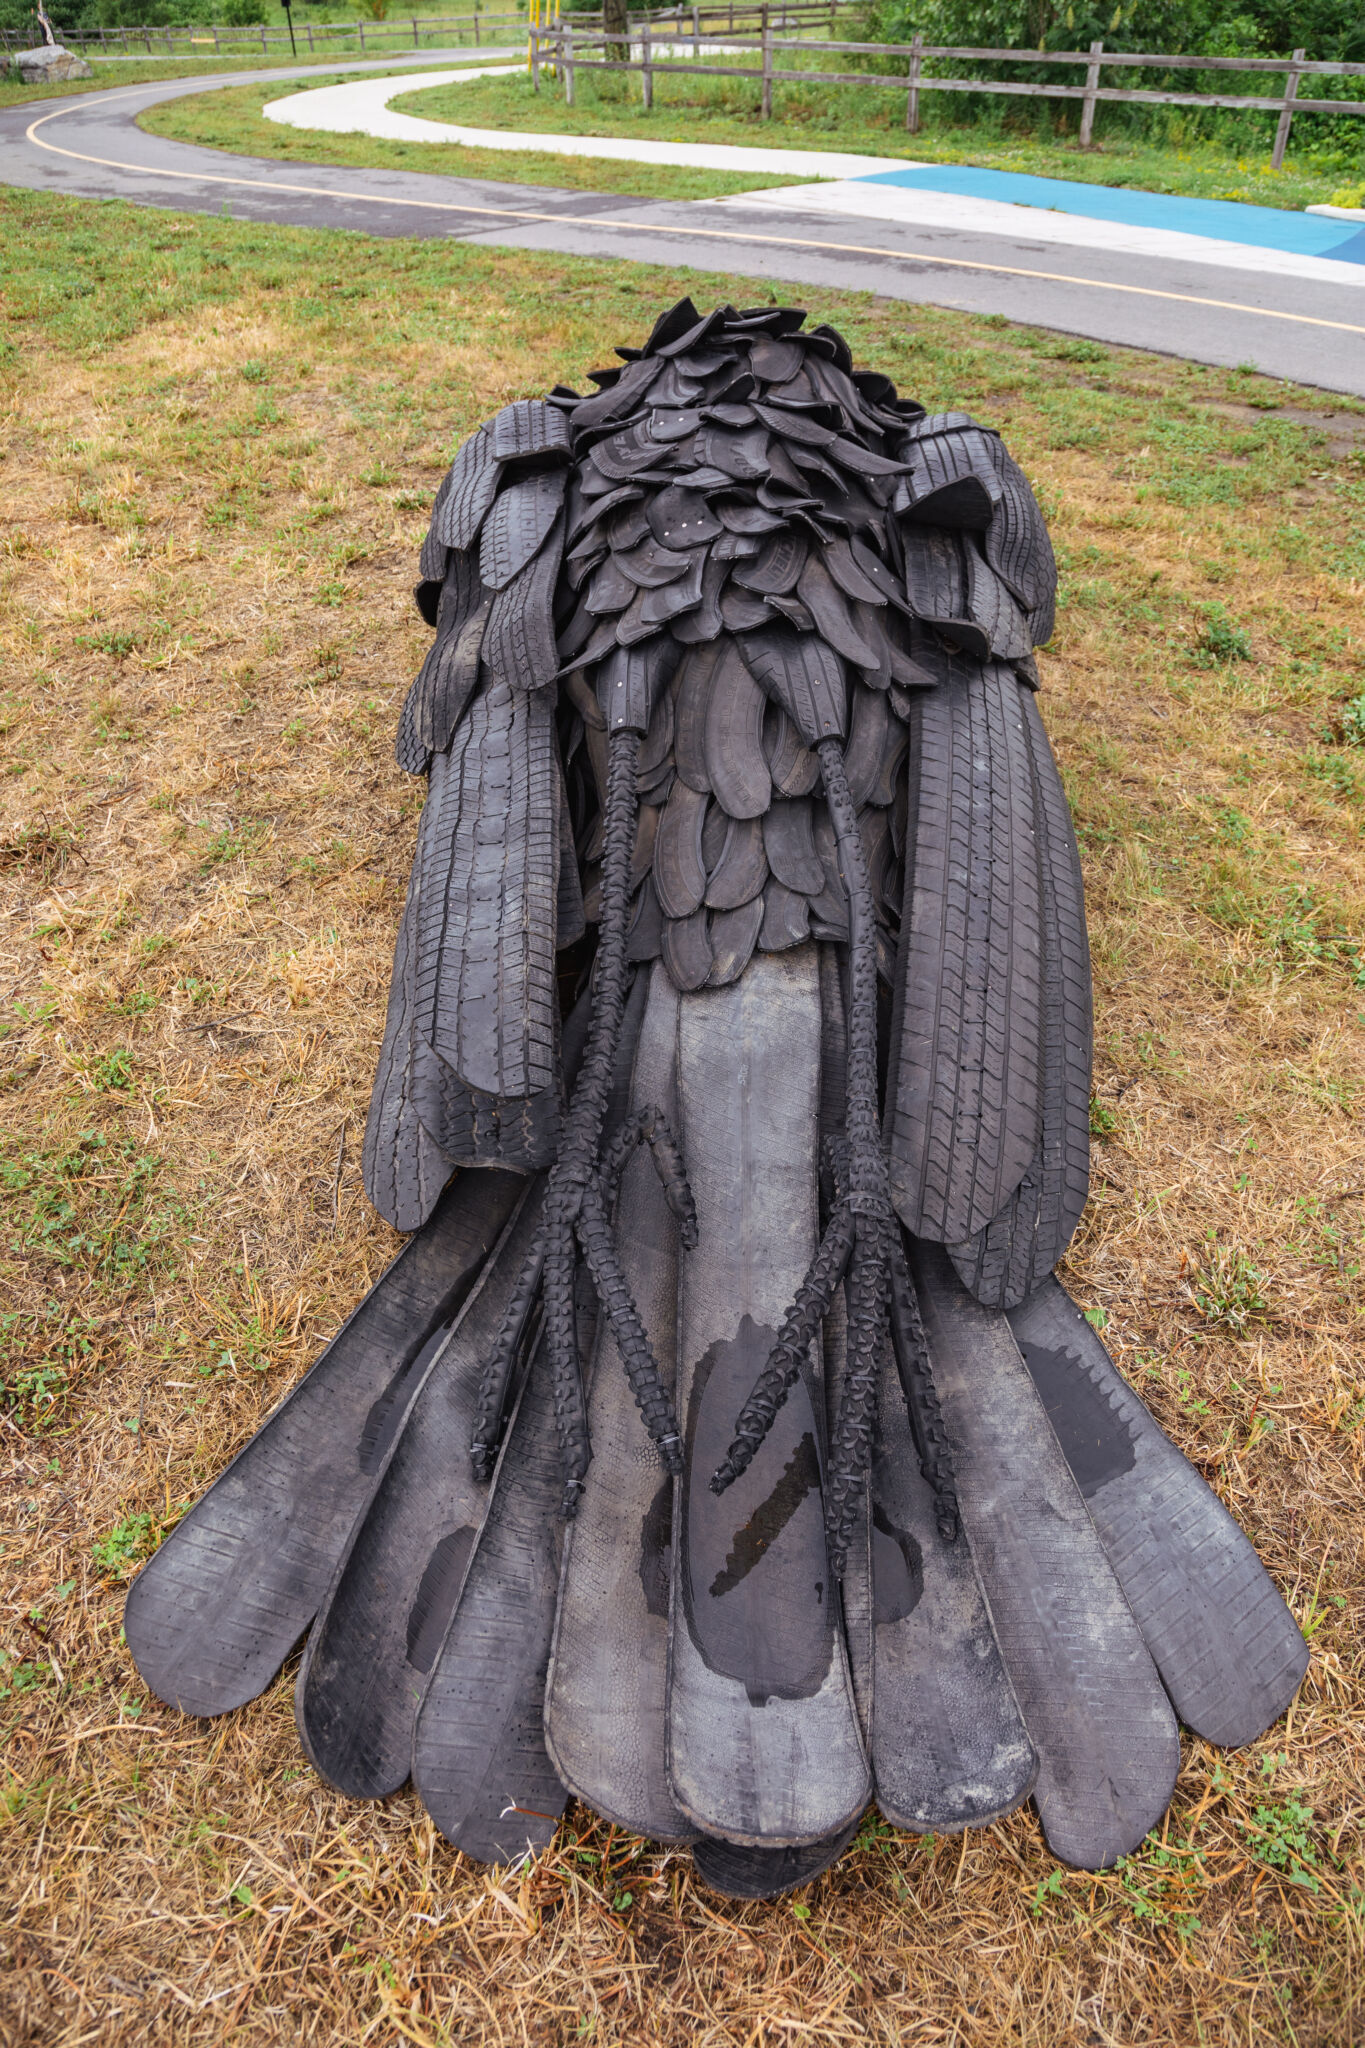 Plan rapproché de l’œuvre, mettant en évidence le corps du corbeau, composé de pneus recyclés.